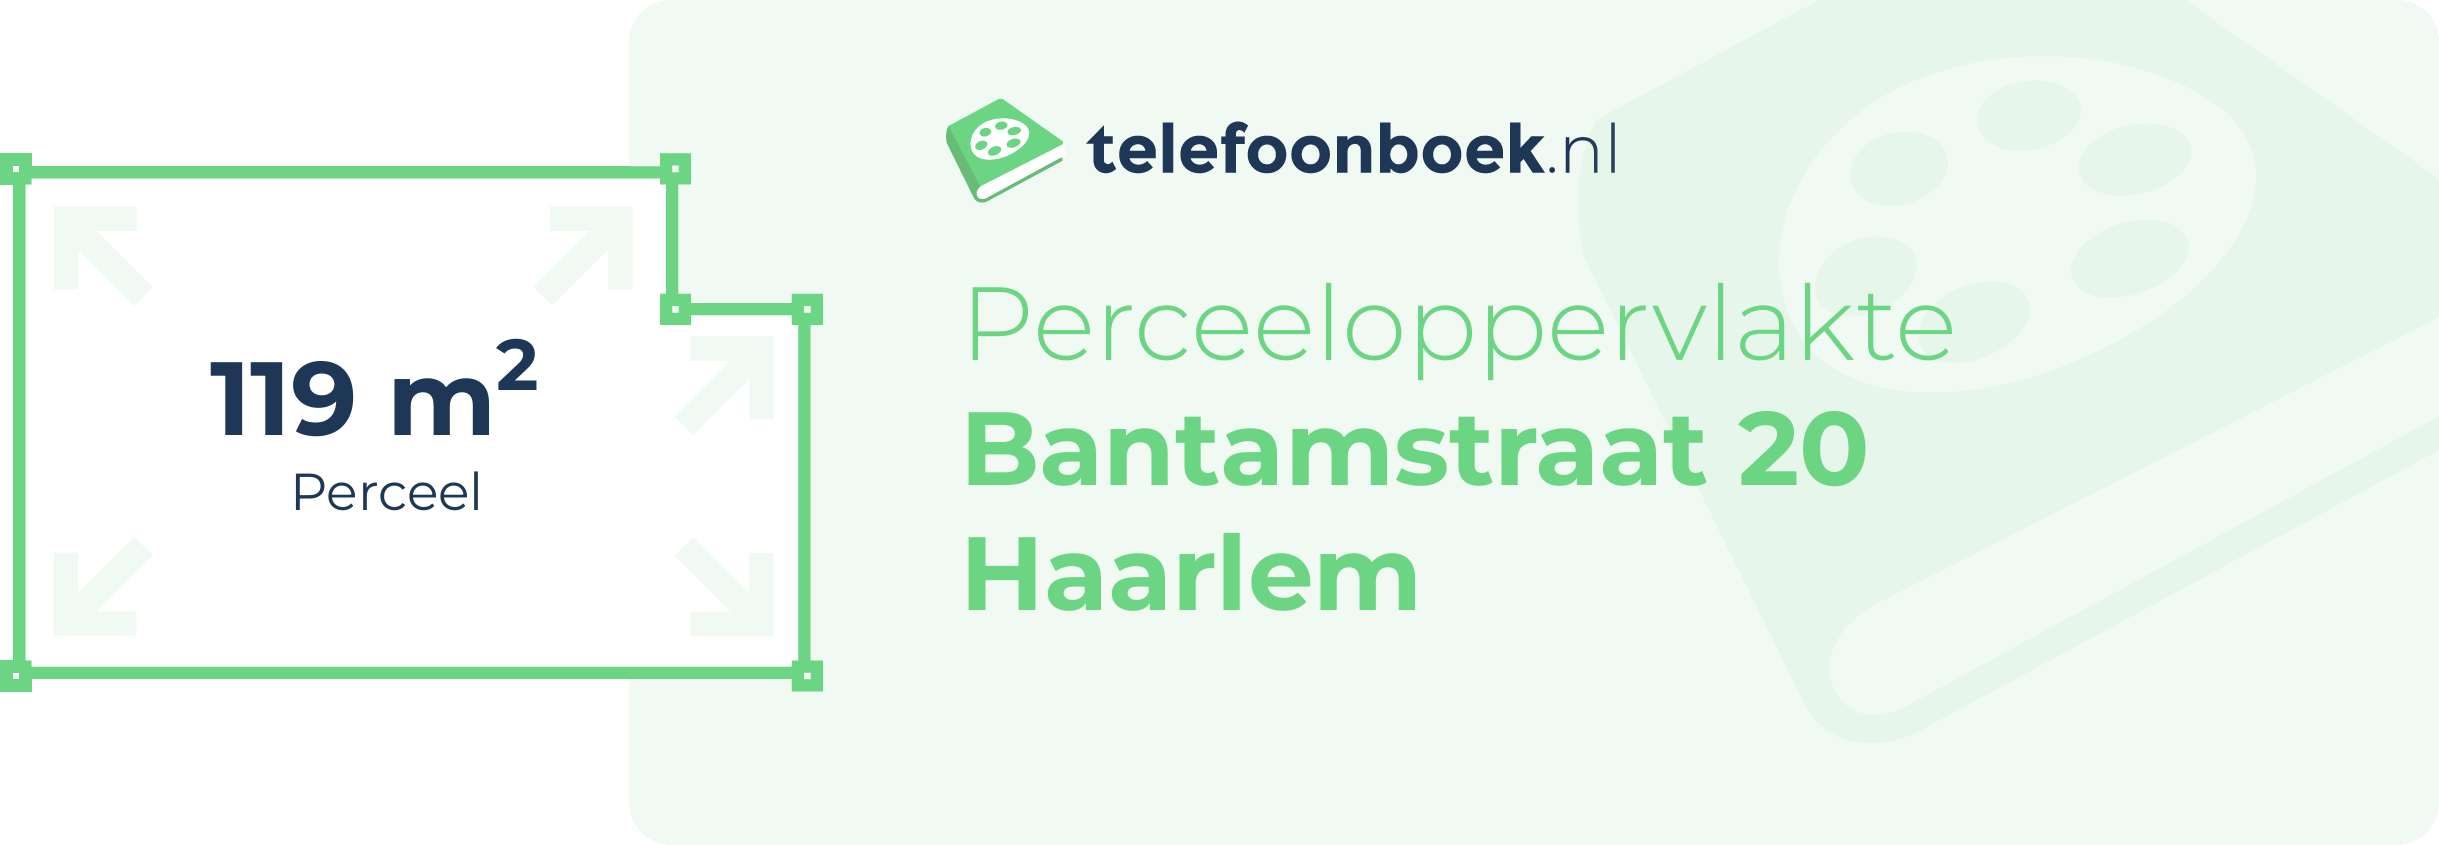 Perceeloppervlakte Bantamstraat 20 Haarlem